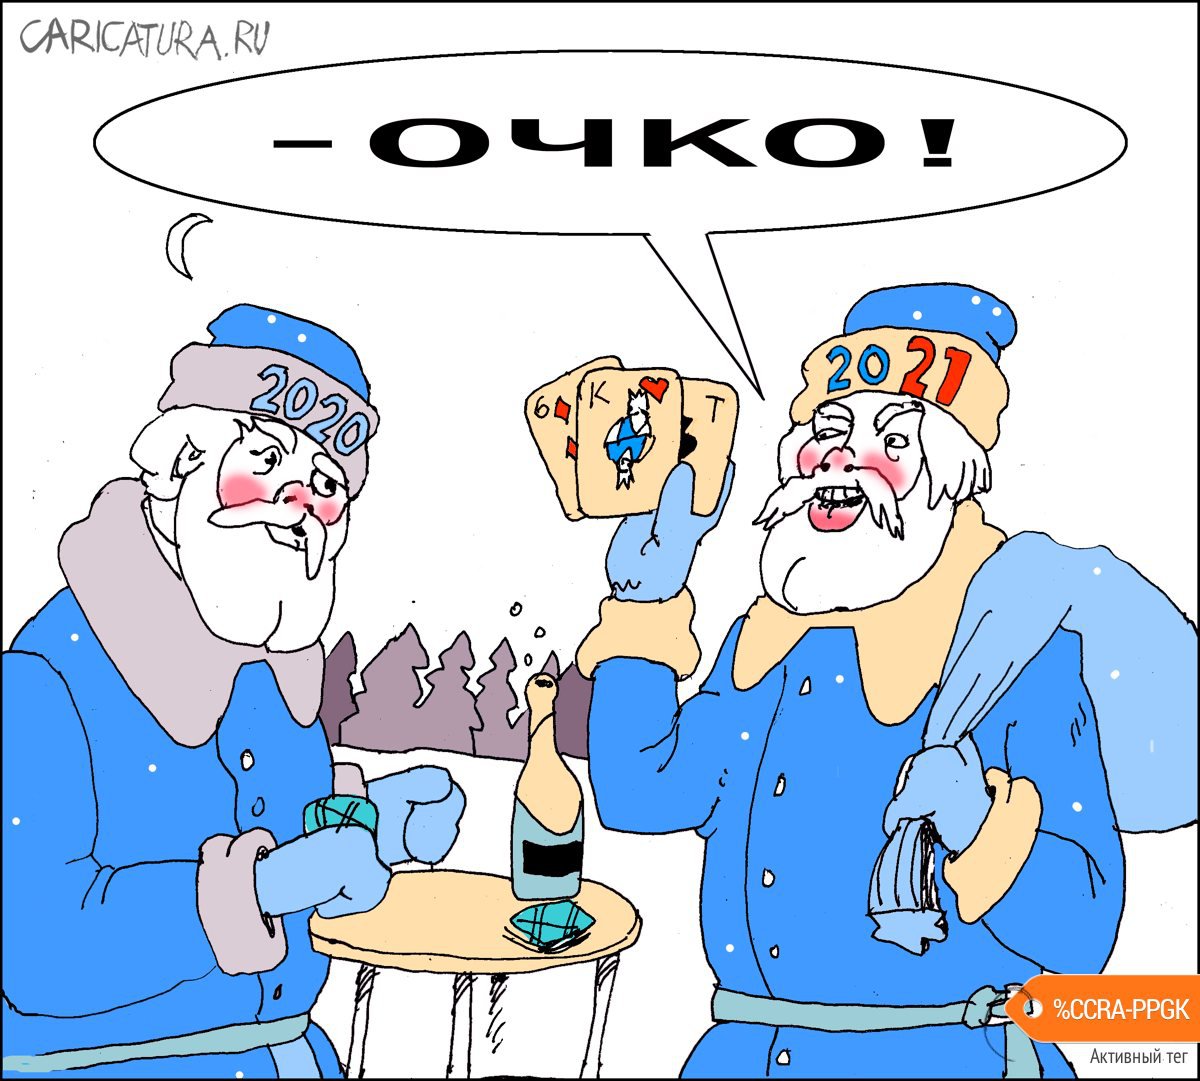 Карикатура "Очко!", Александр Уваров